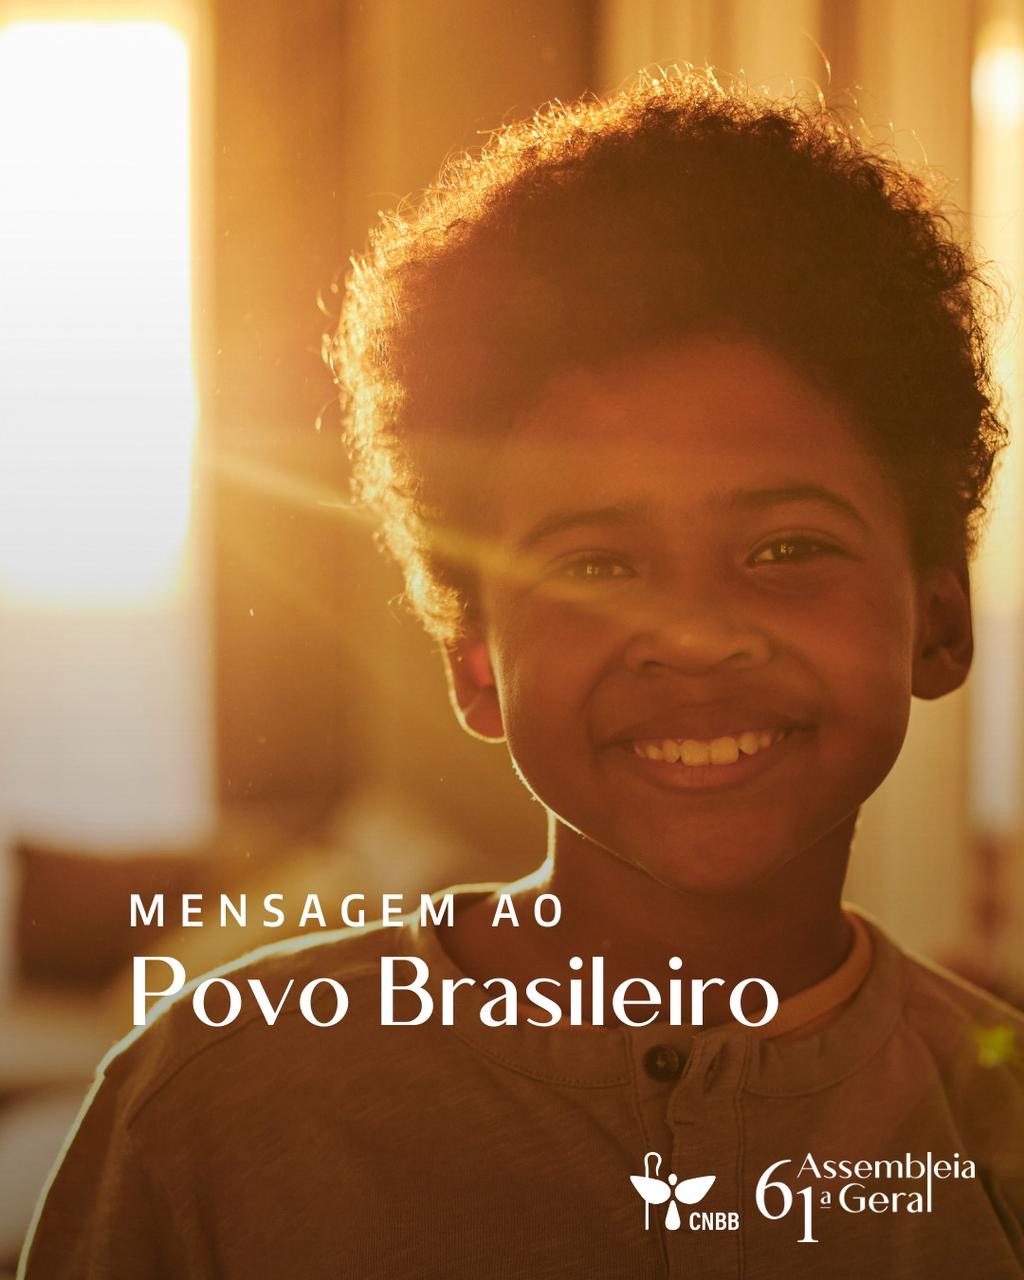 Notícia: 61ª Assembleia da CNBB divulga mensagem ao povo brasileiro